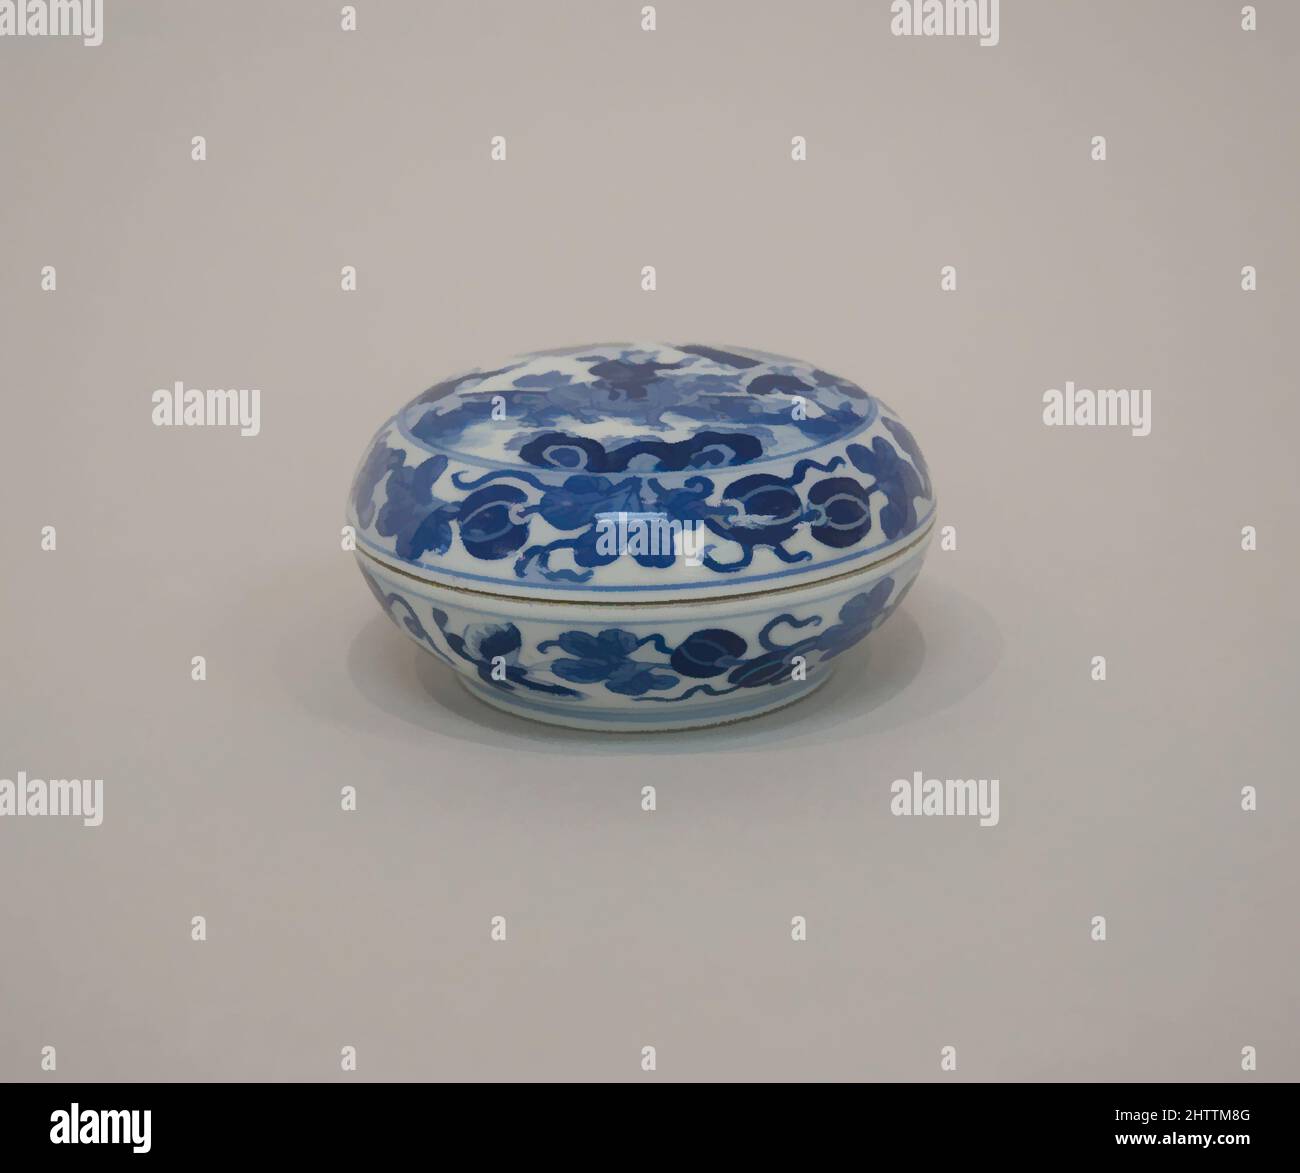 Arte ispirata a Box con copertina, dinastia Qing (1644–1911), periodo Kangxi (1662–1722), Cina, porcellana decorata in blu underglaze, H. 2 poll. (5,1 cm); W. 3 3/4" (9,5 cm); diam. Di piede: 2 1/2 poll. (6,4 cm), Ceramica, opere classiche modernizzate da Artotop con un tuffo di modernità. Forme, colore e valore, impatto visivo accattivante sulle emozioni artistiche attraverso la libertà delle opere d'arte in modo contemporaneo. Un messaggio senza tempo che persegue una nuova direzione selvaggiamente creativa. Artisti che si rivolgono al supporto digitale e creano l'NFT Artotop Foto Stock